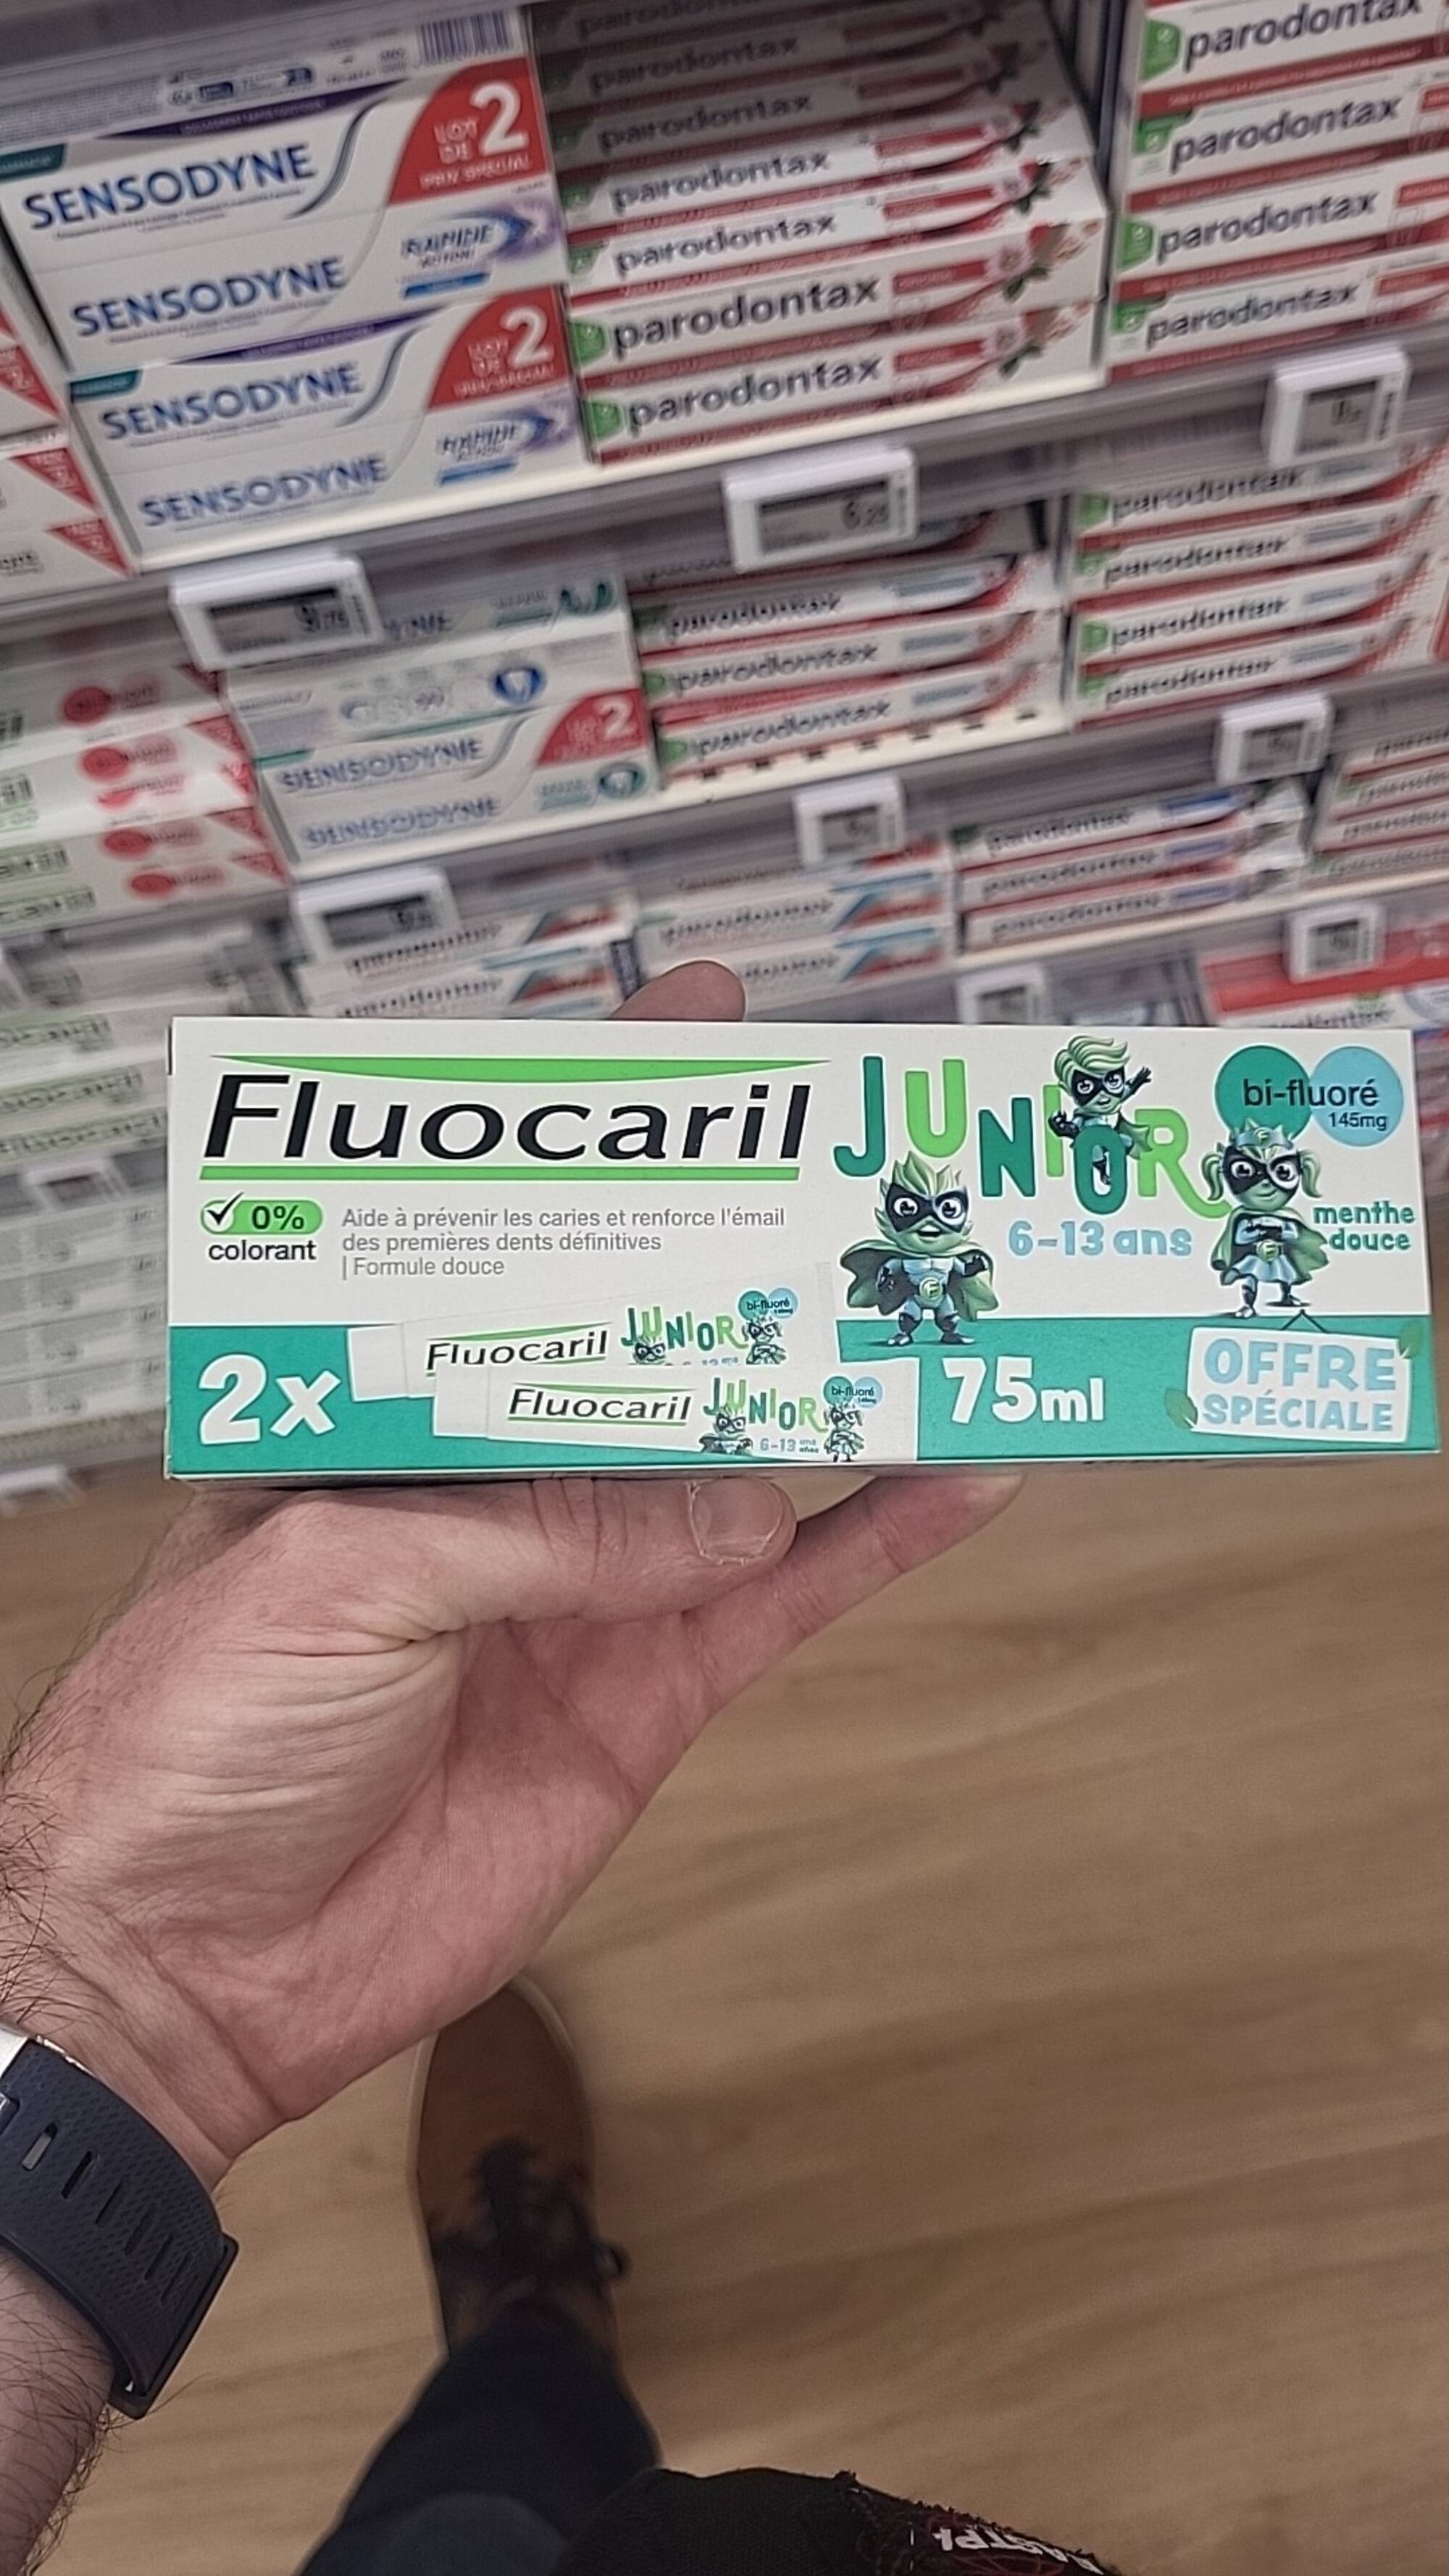 FLUOCARIL - Junior - Dentifrice menthe douce